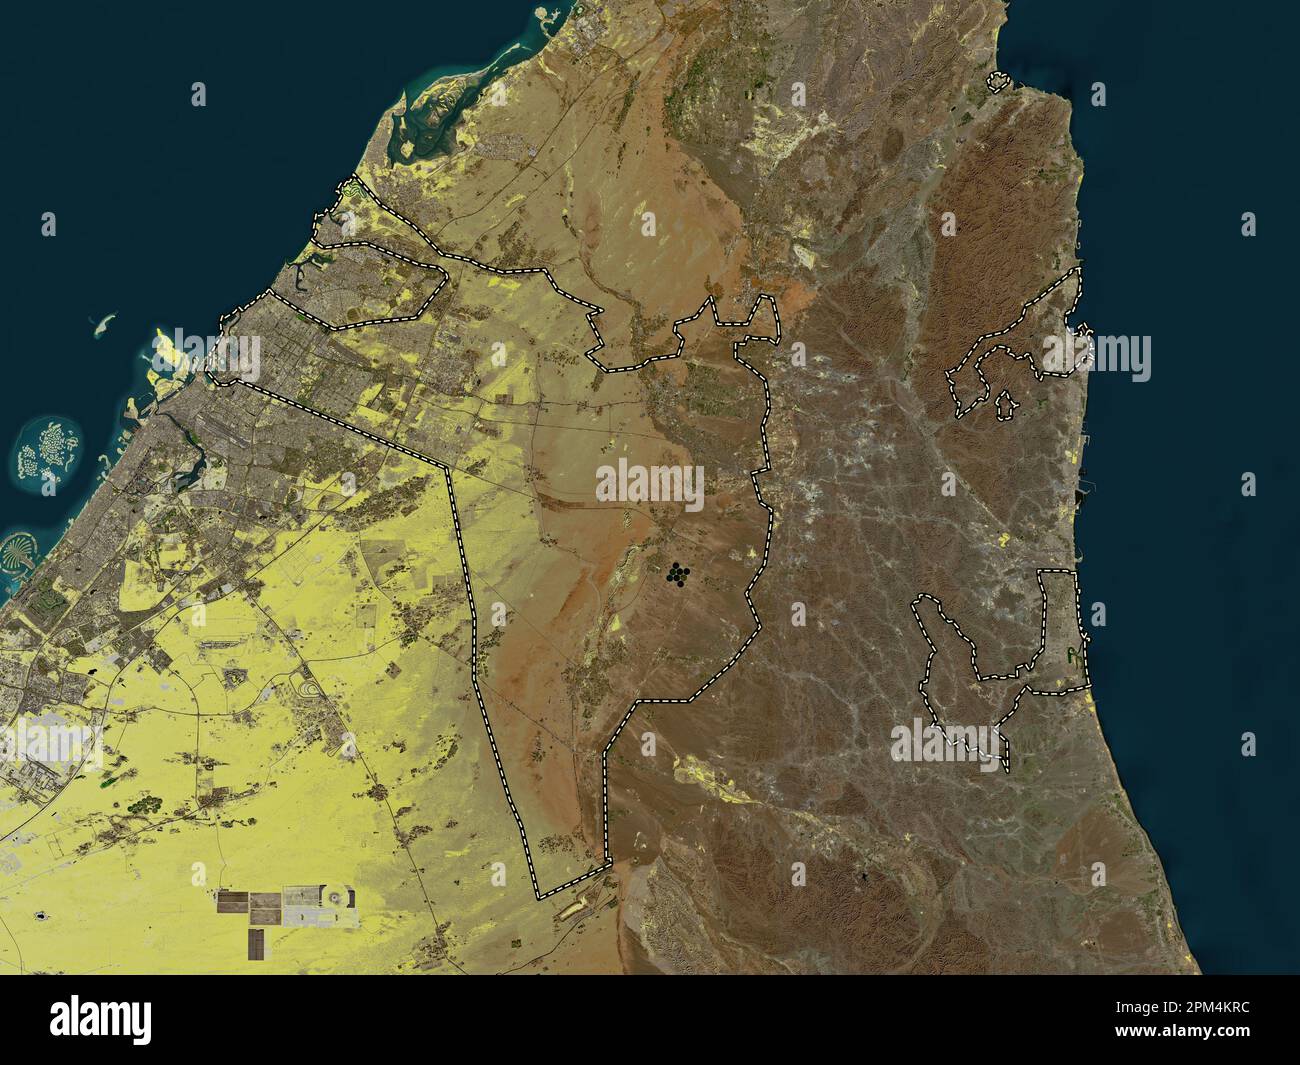 Sharjah, emirato degli Emirati Arabi Uniti. Mappa satellitare a bassa risoluzione Foto Stock